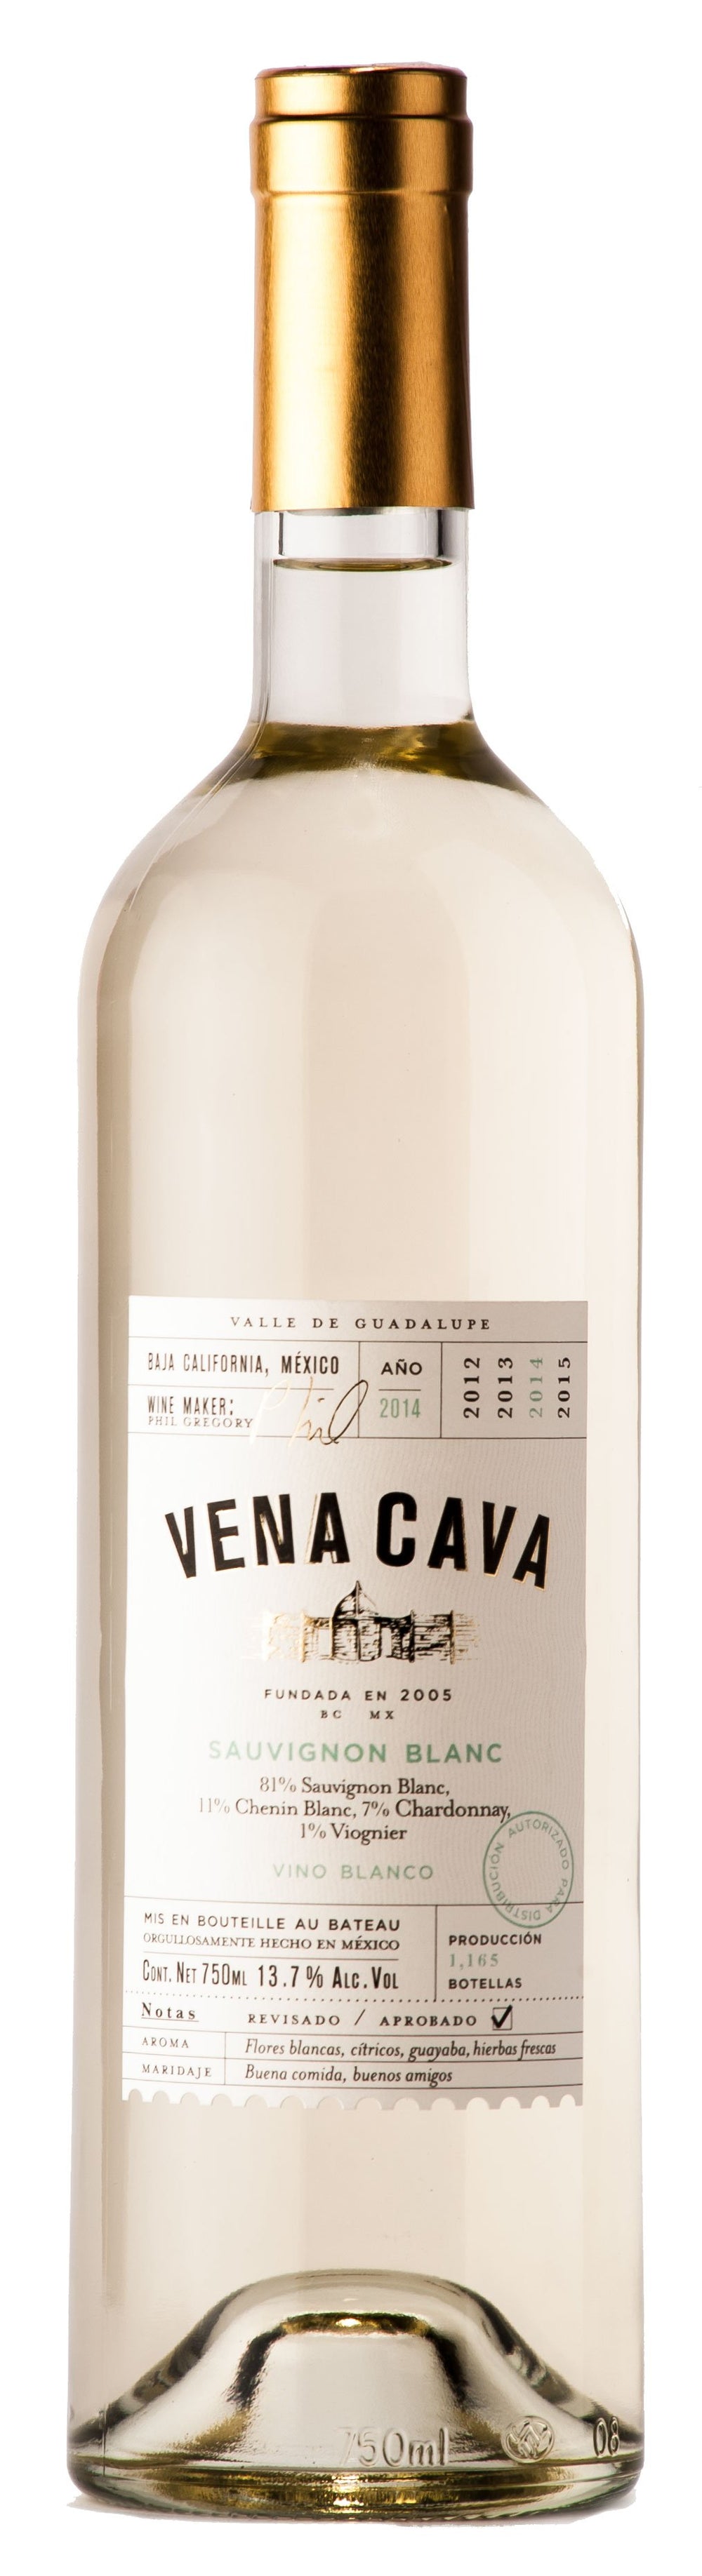 Vino Blanco Vena Cava Sauvignon Blanc 750 ml